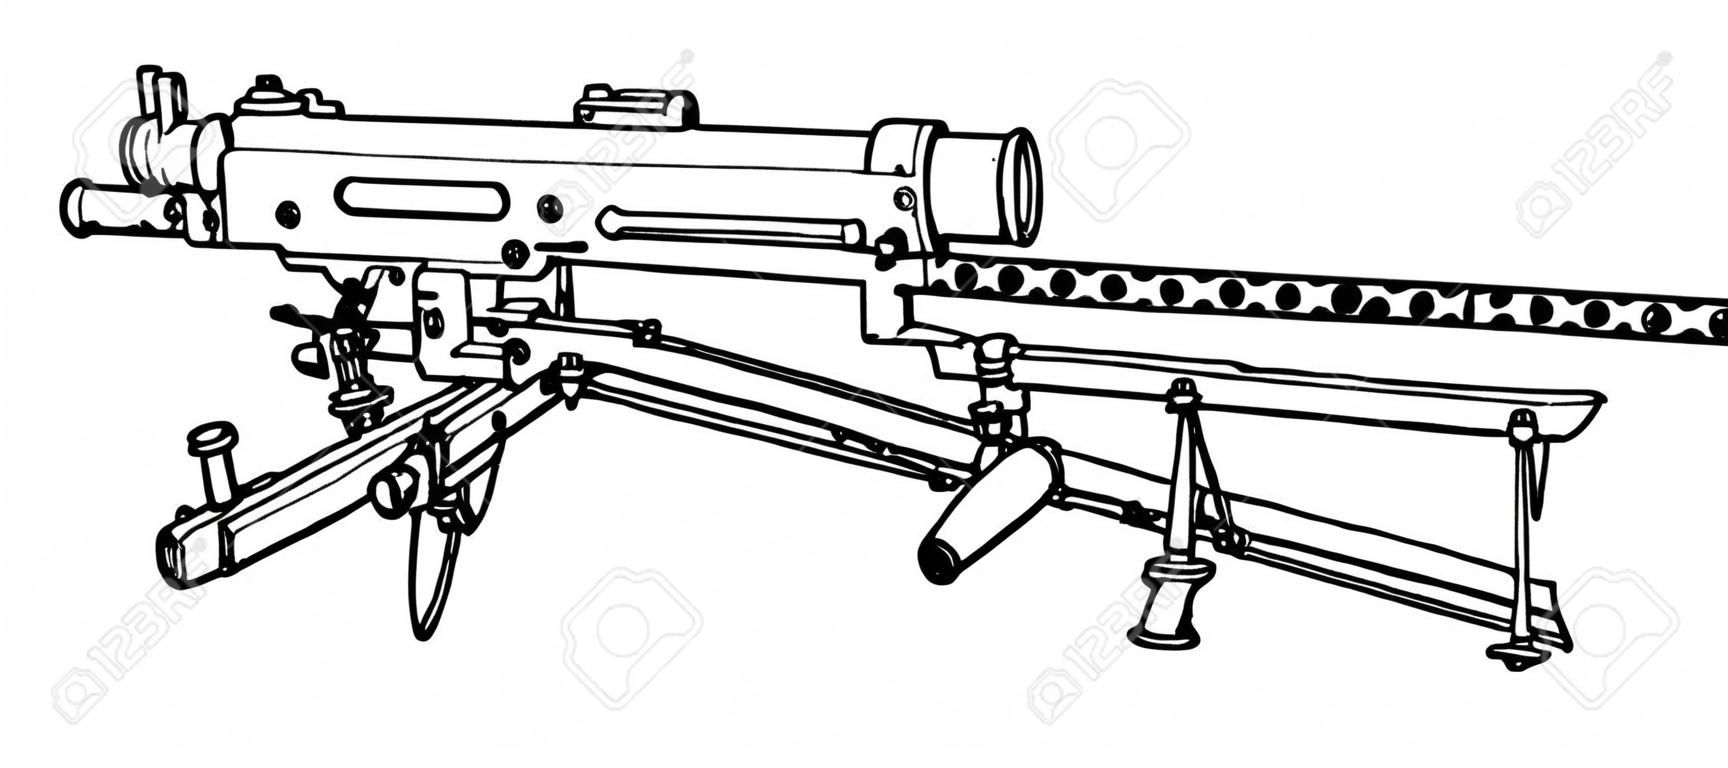 Browning Machine Gun był używany jako lekka piechota, vintage rysowanie linii lub ilustracja grawerowania.